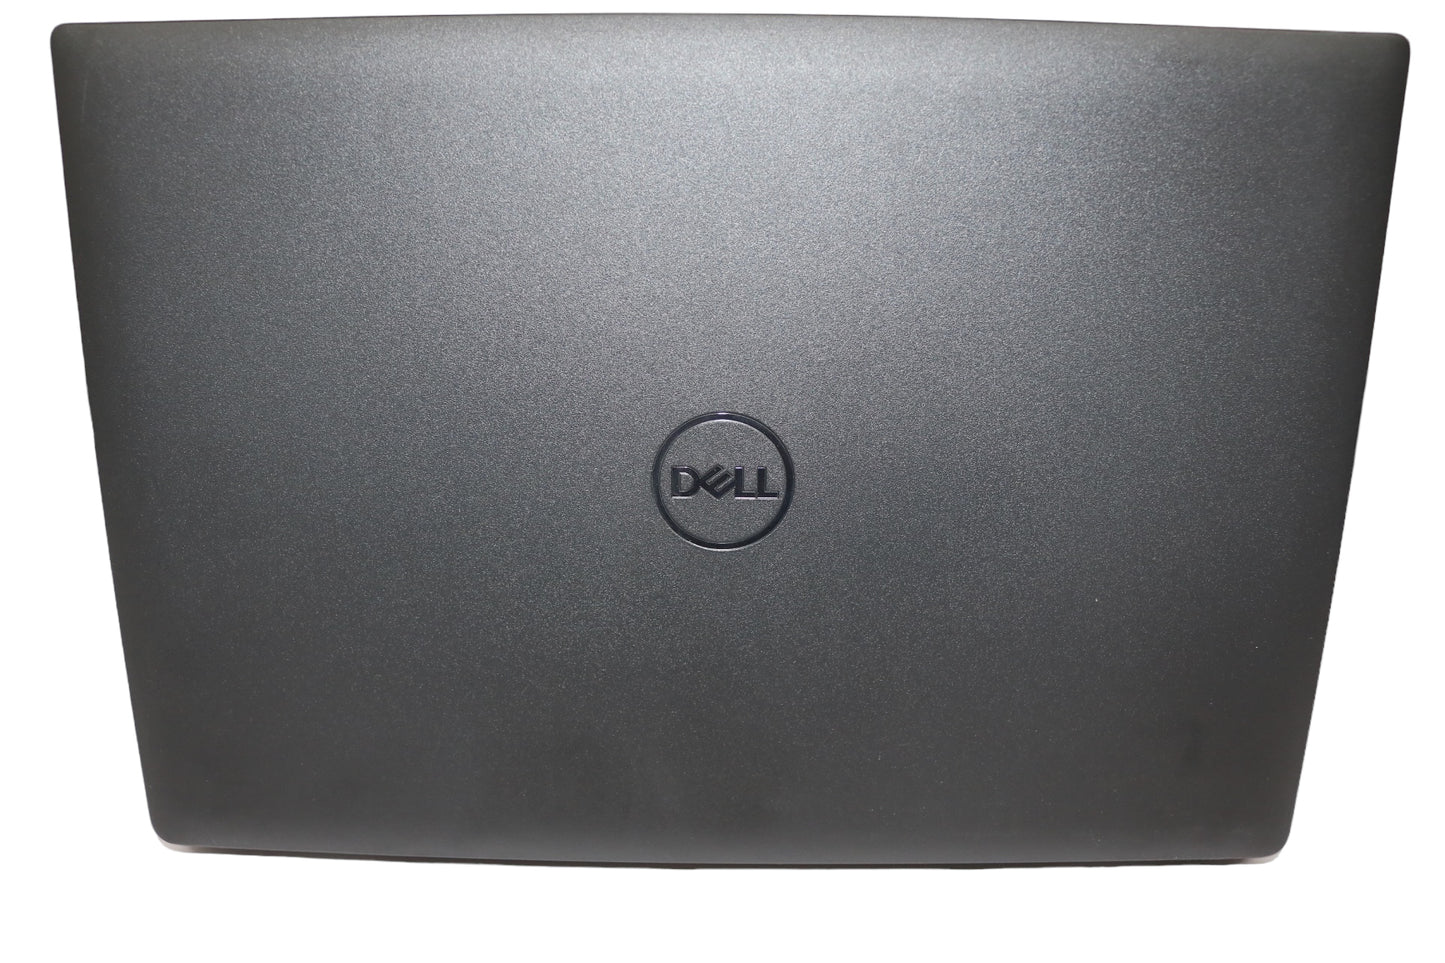 Dell Latitude 3420 14" (256 GB SSD, Intel Core i5-1145G7 @ 2.60GHz, 16GB RAM)